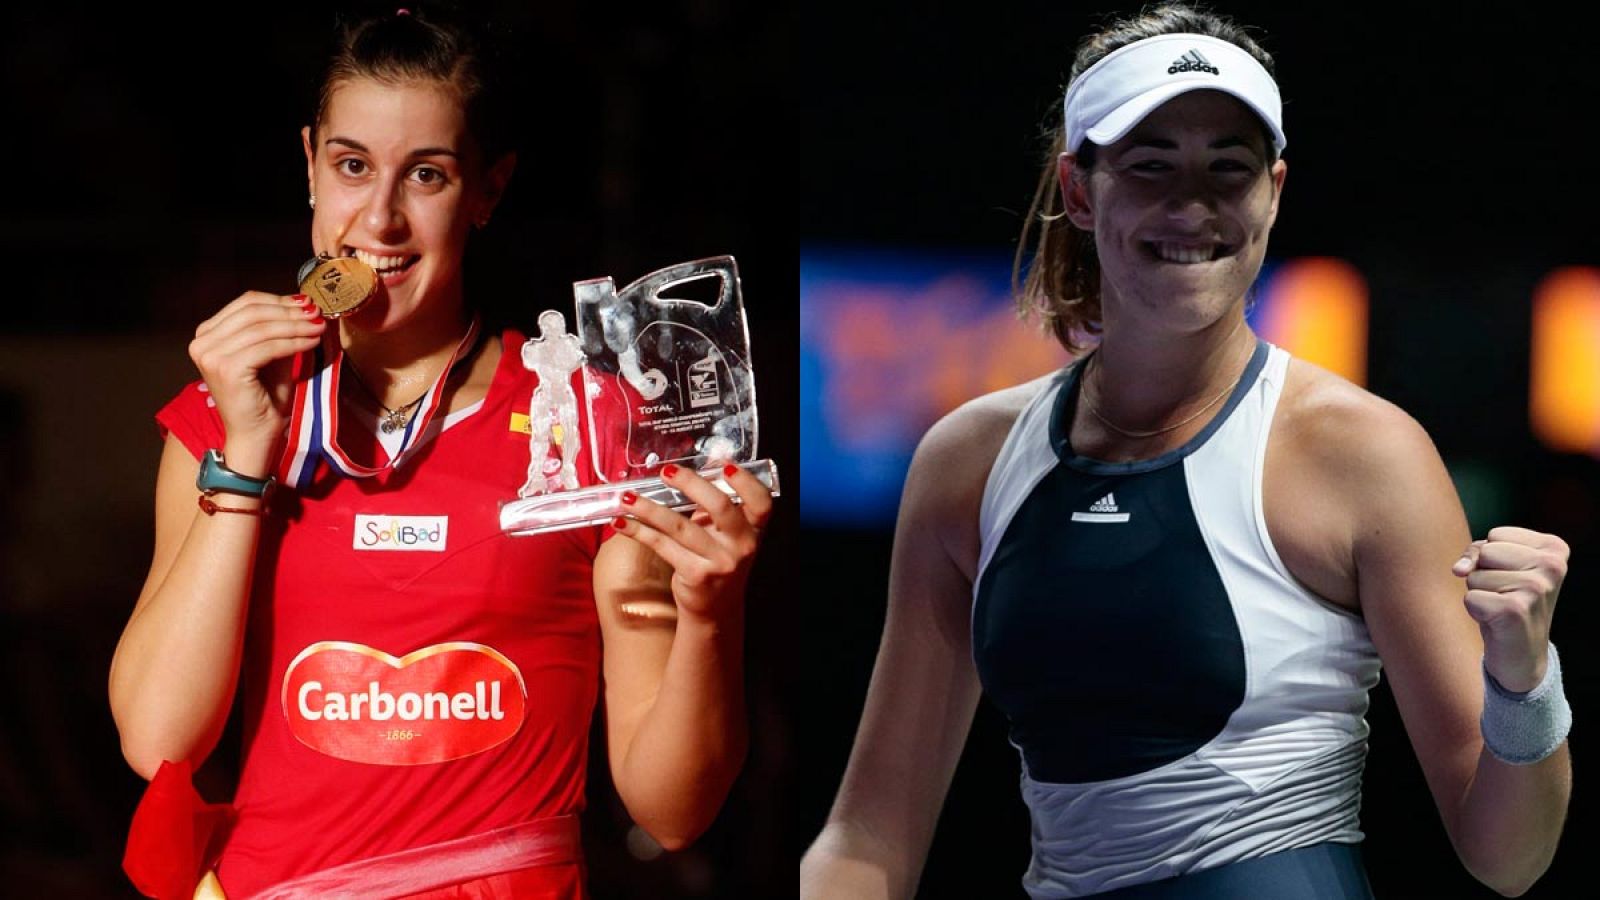 Carolina Marín y Garbiñe Muguruza, protagonistas de los deportes de raqueta en España en 2015